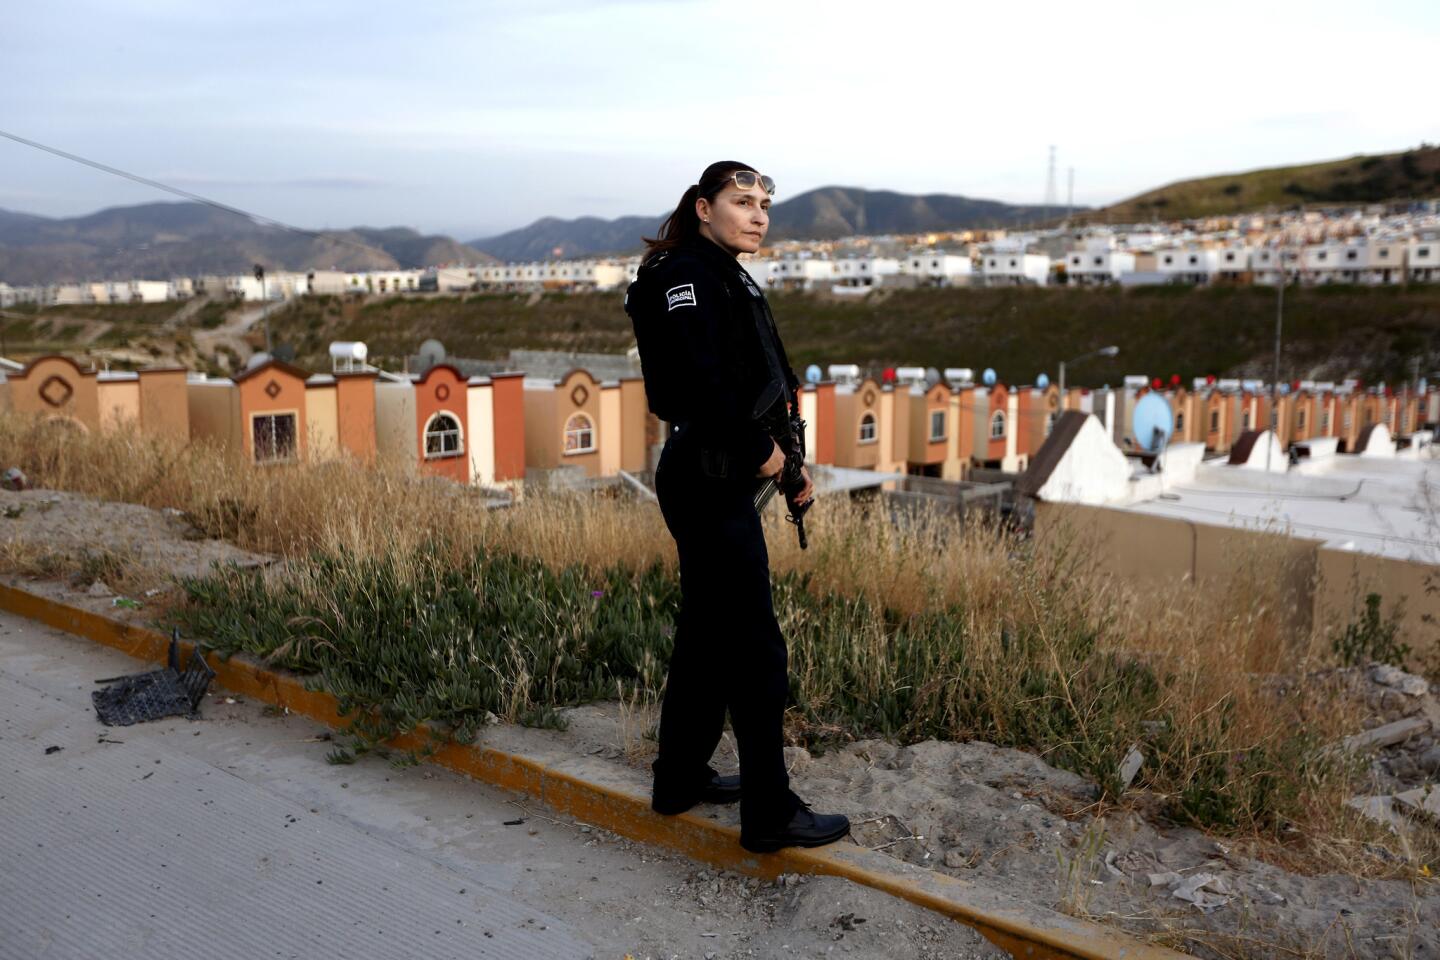 Journalists at Zeta cover cartel violence in Tijuana